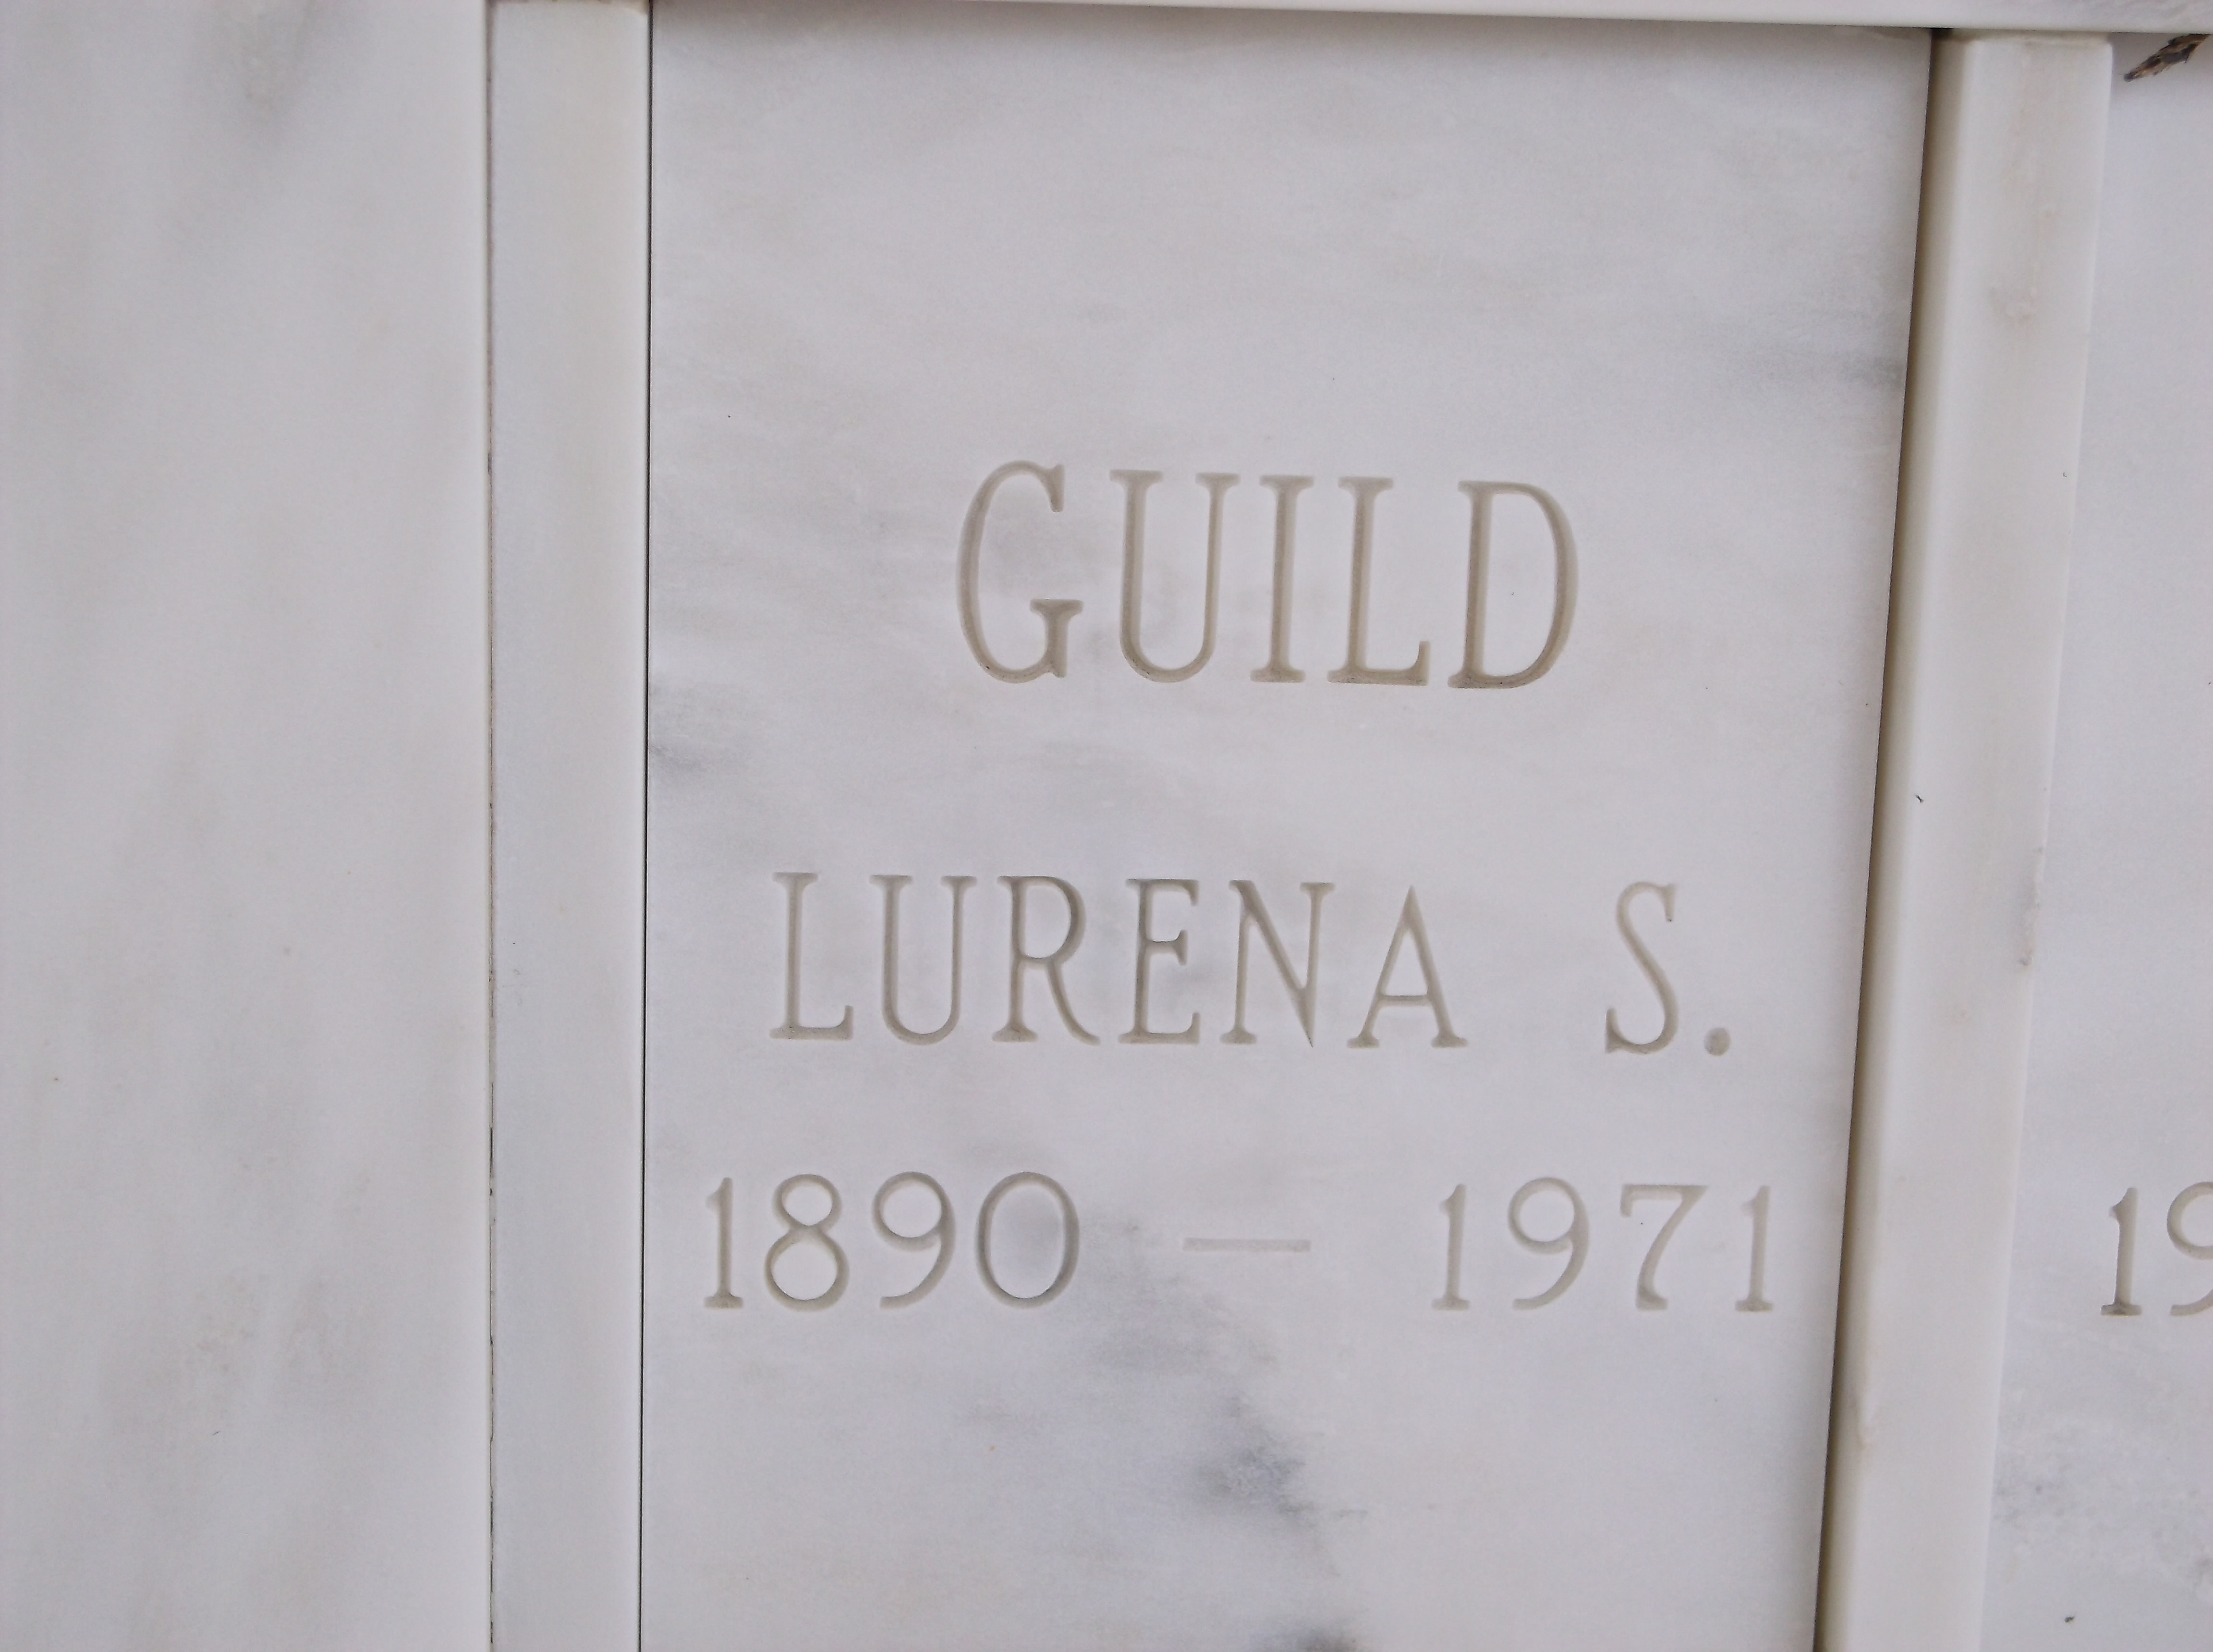 Lurena S Guild